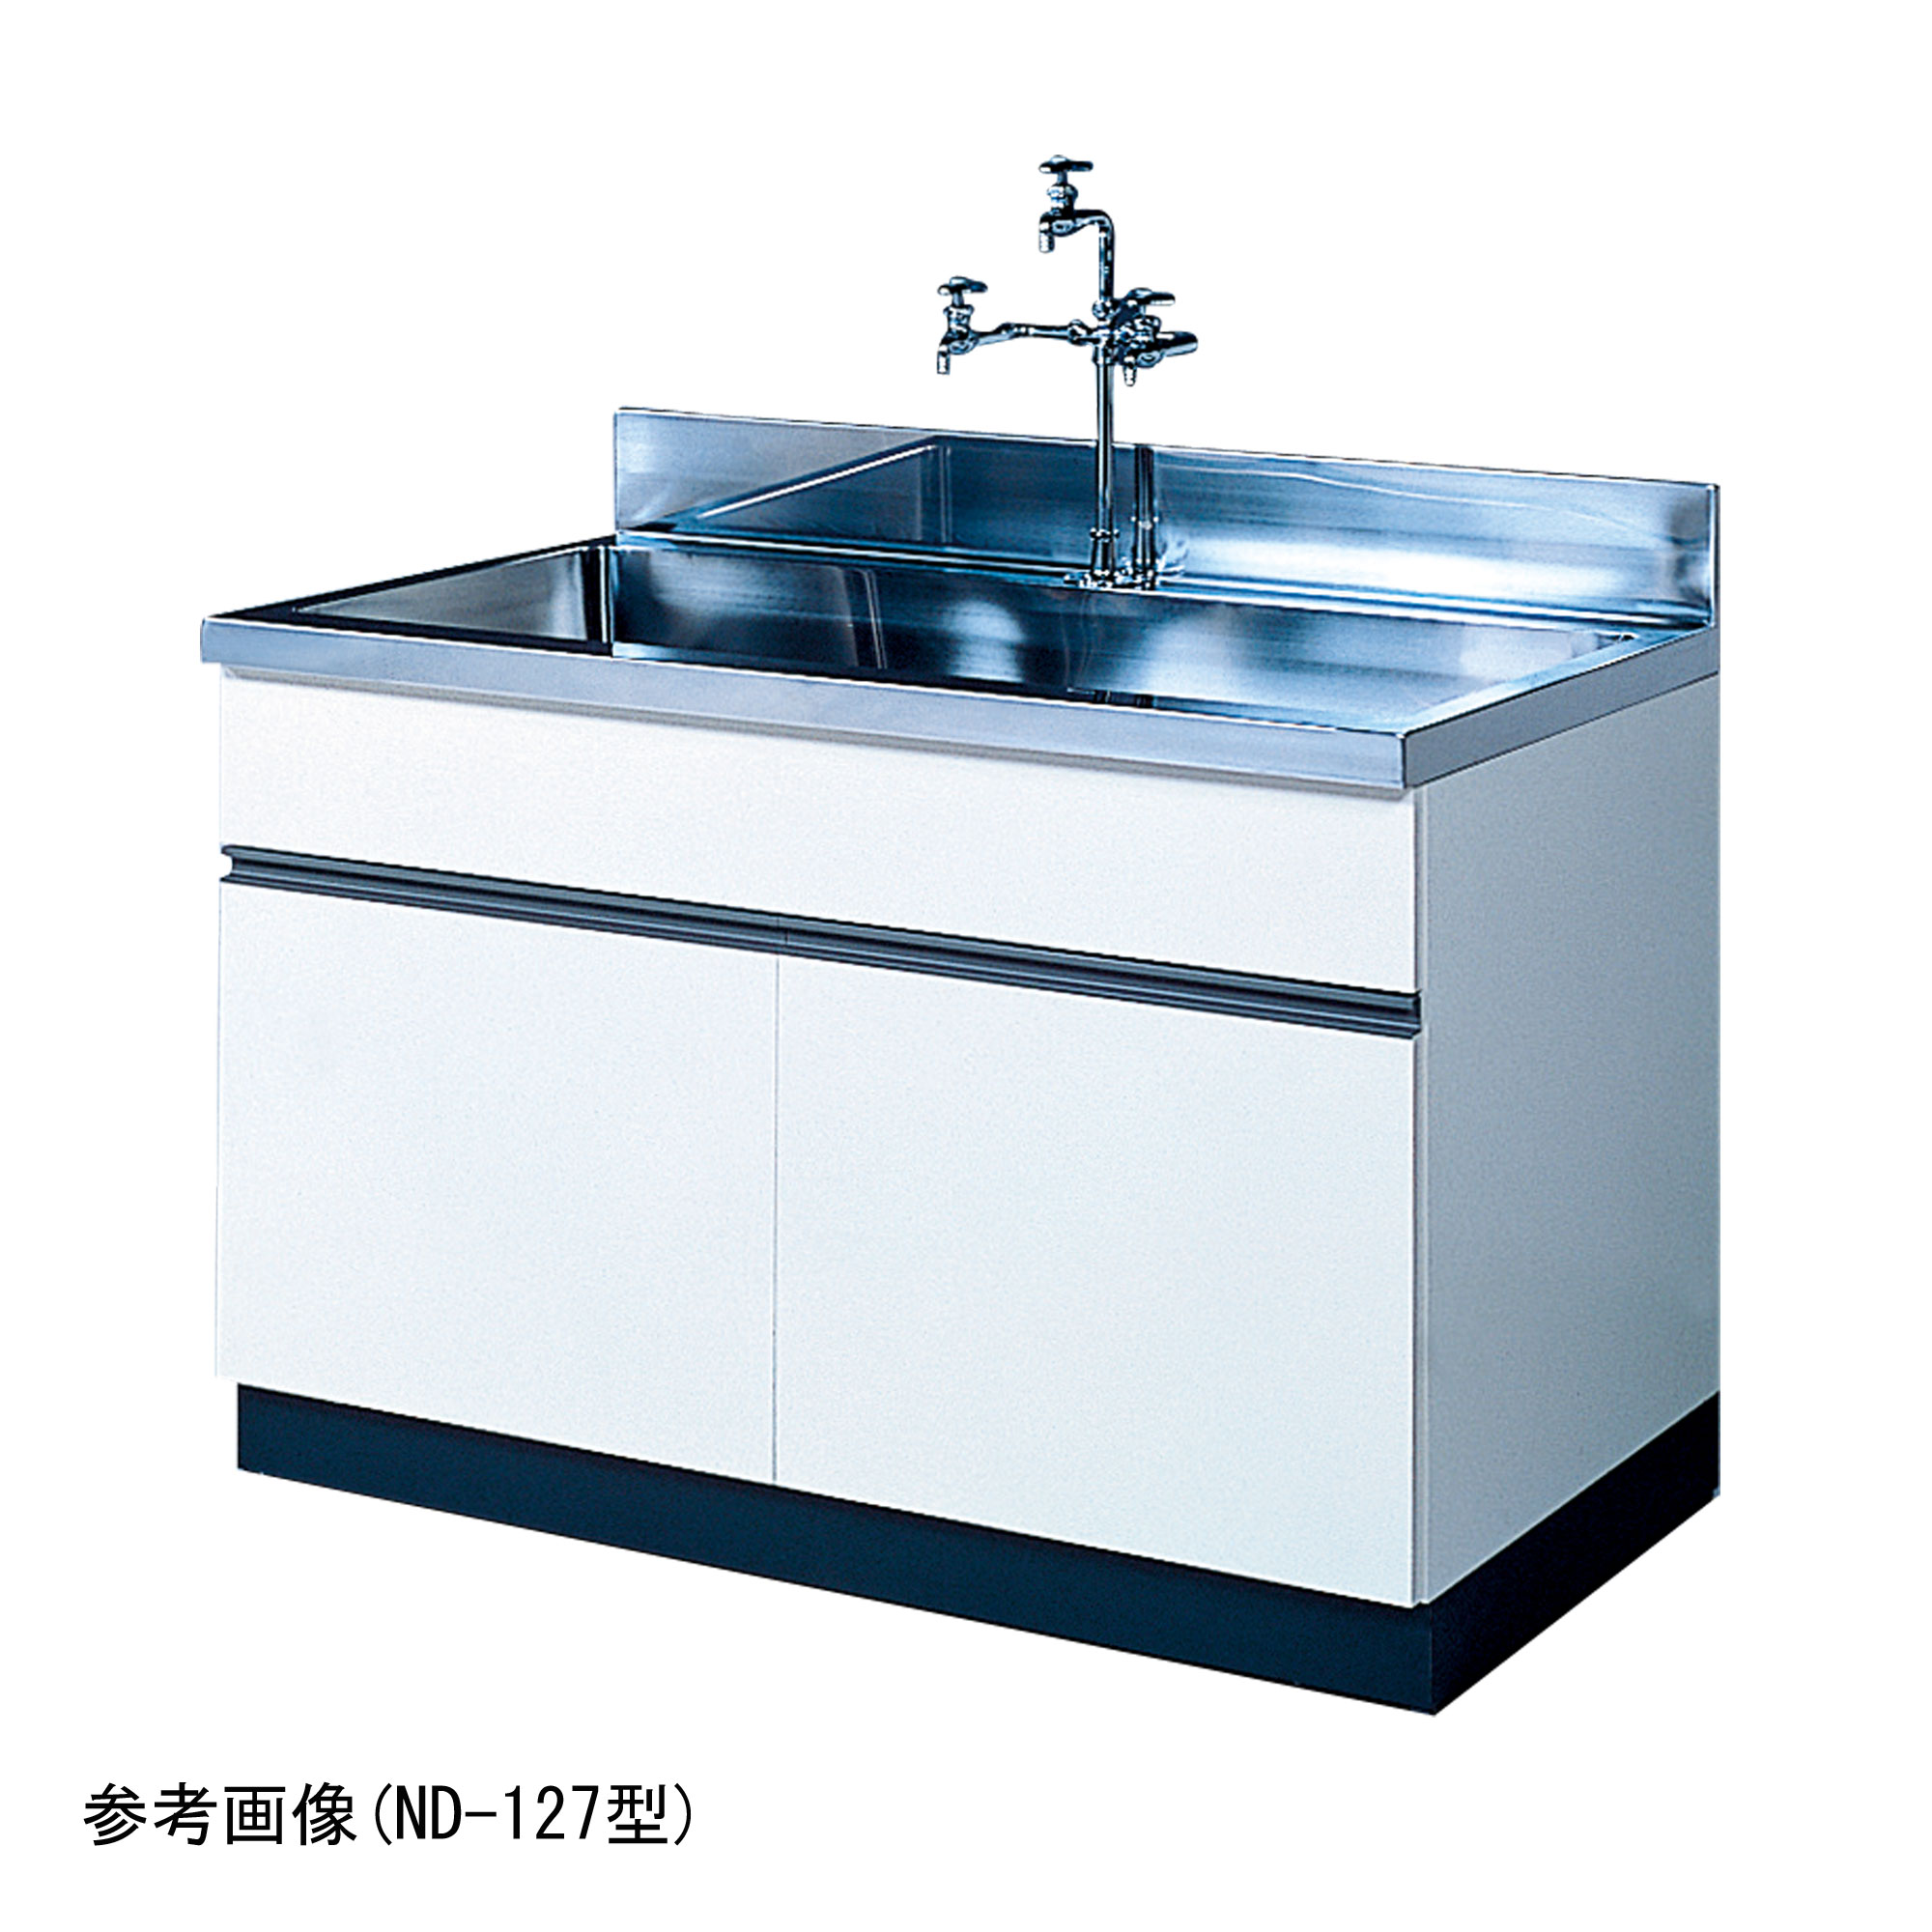 流し台 ND型 (大型水槽) ND-187型 - 柴田科学株式会社